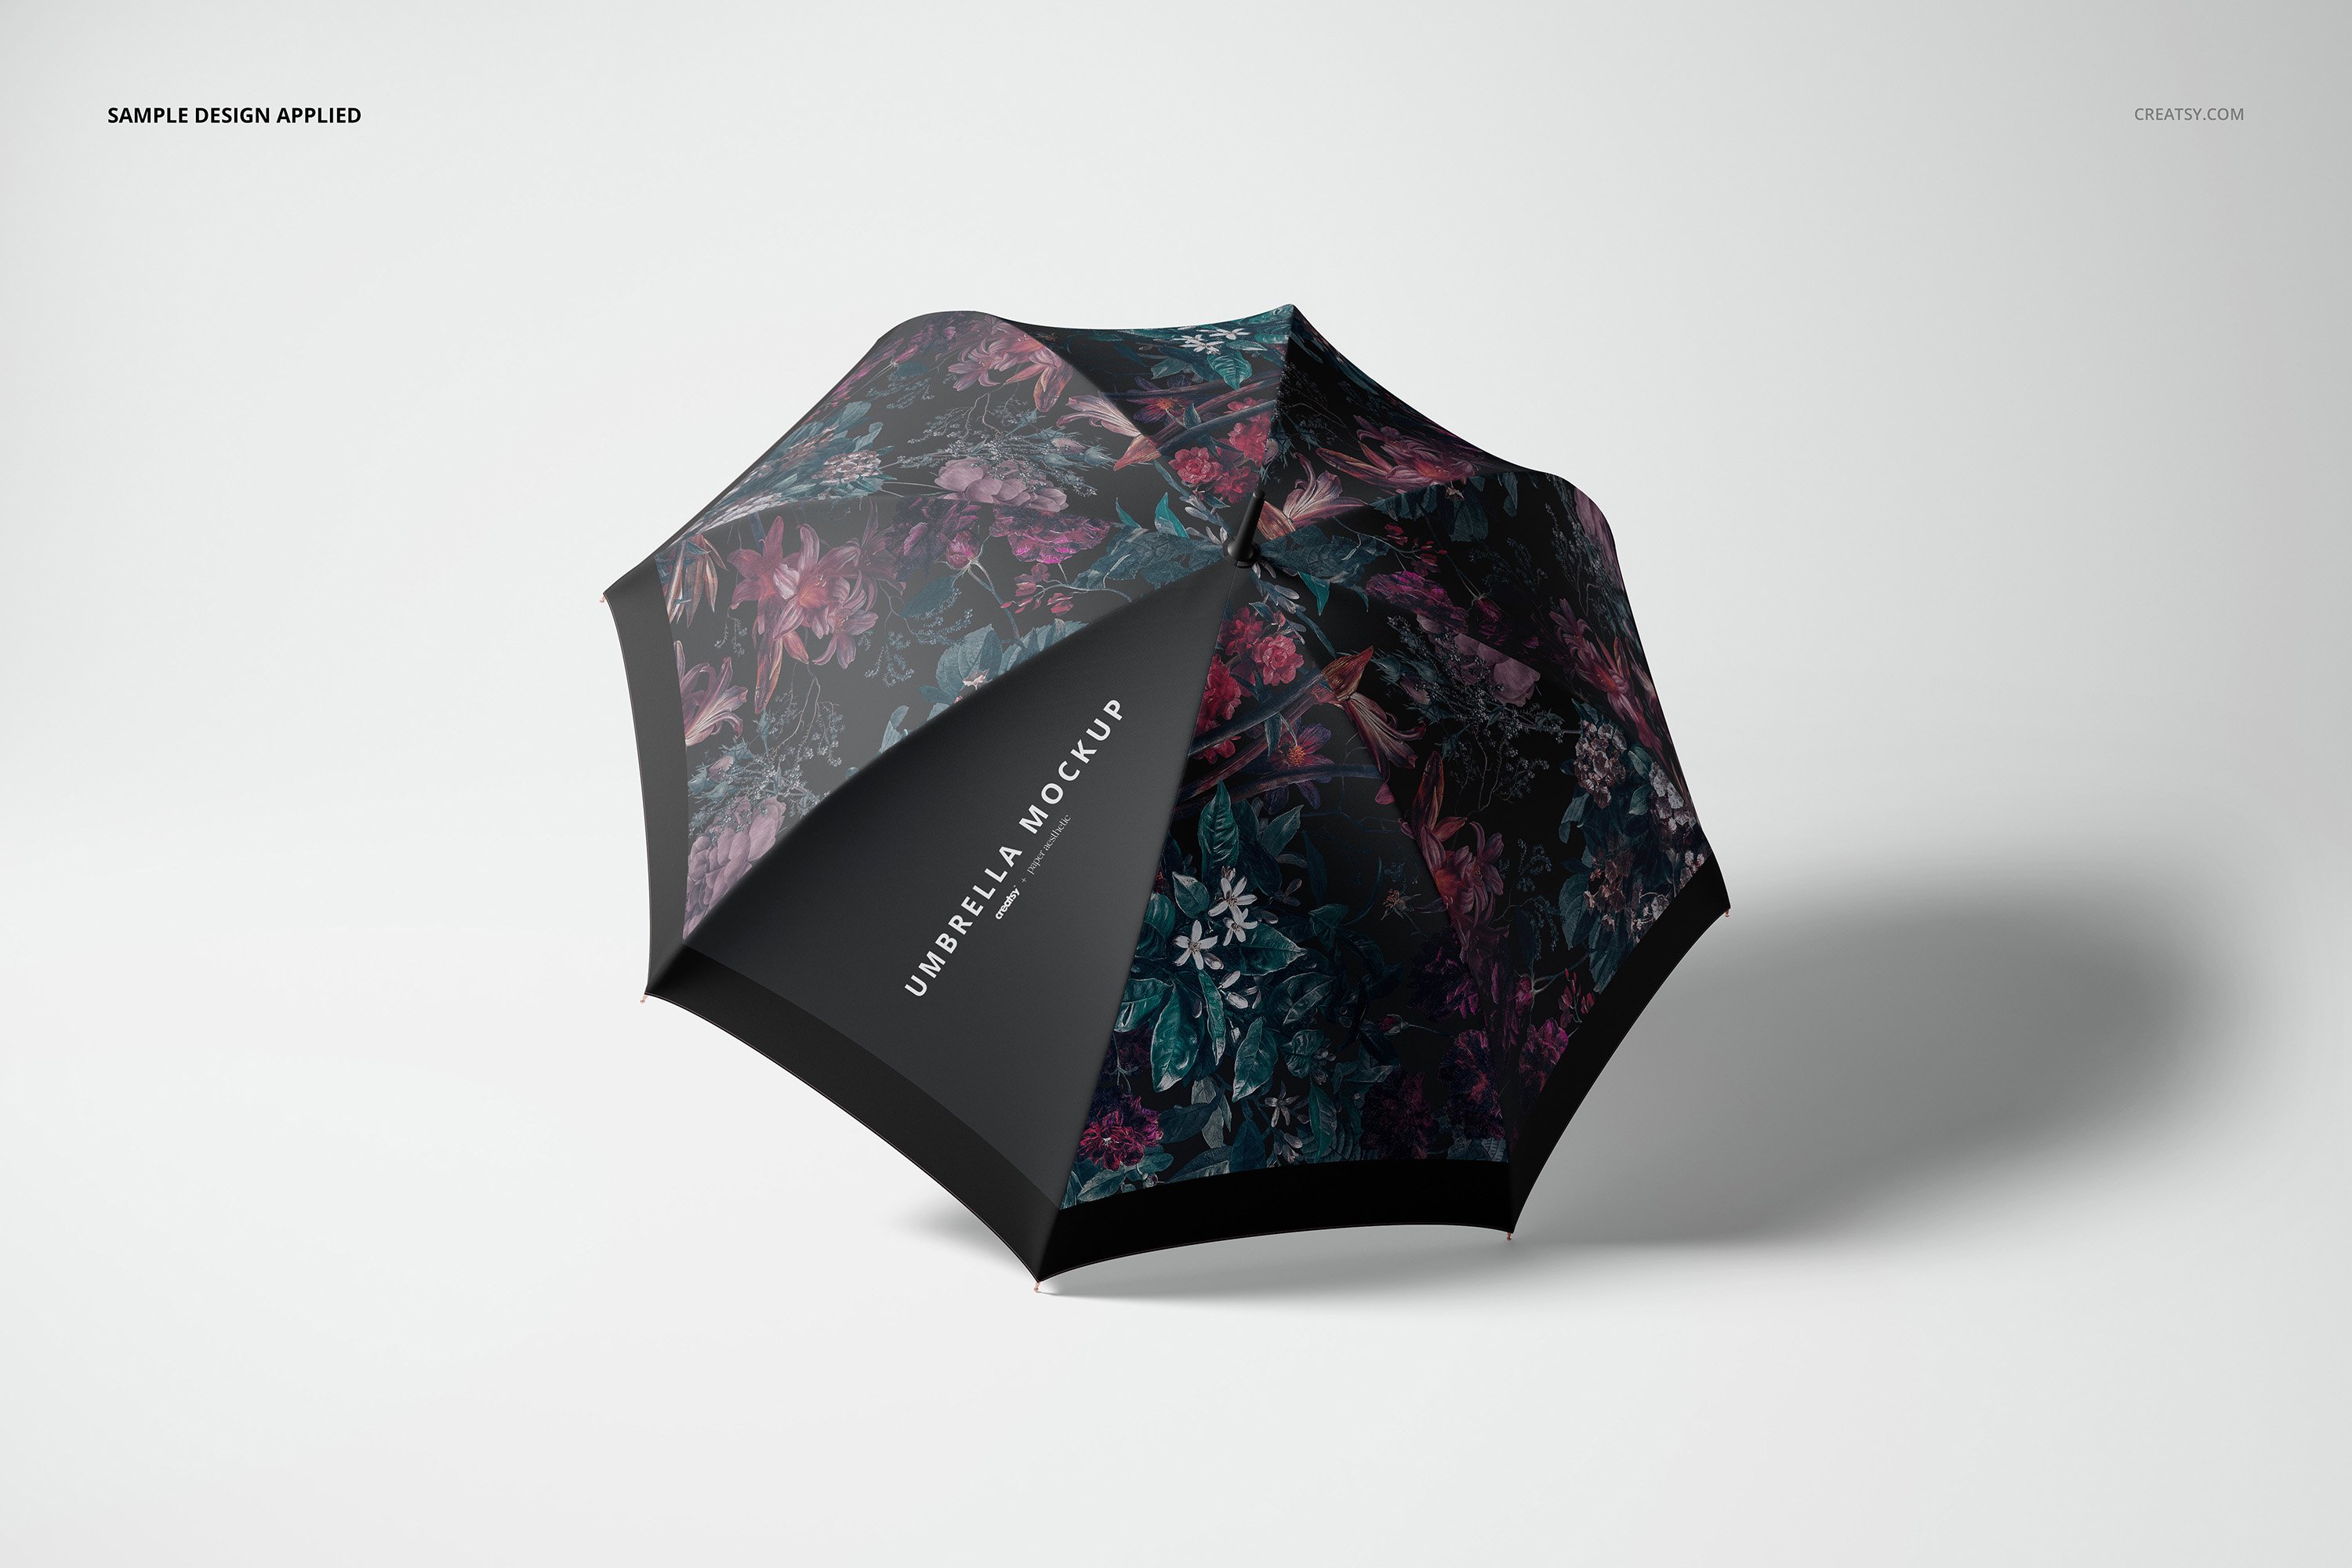 1034 14个时尚太阳伞雨伞品牌Logo设计贴图样机模板合集 Umbrella Mockup Set